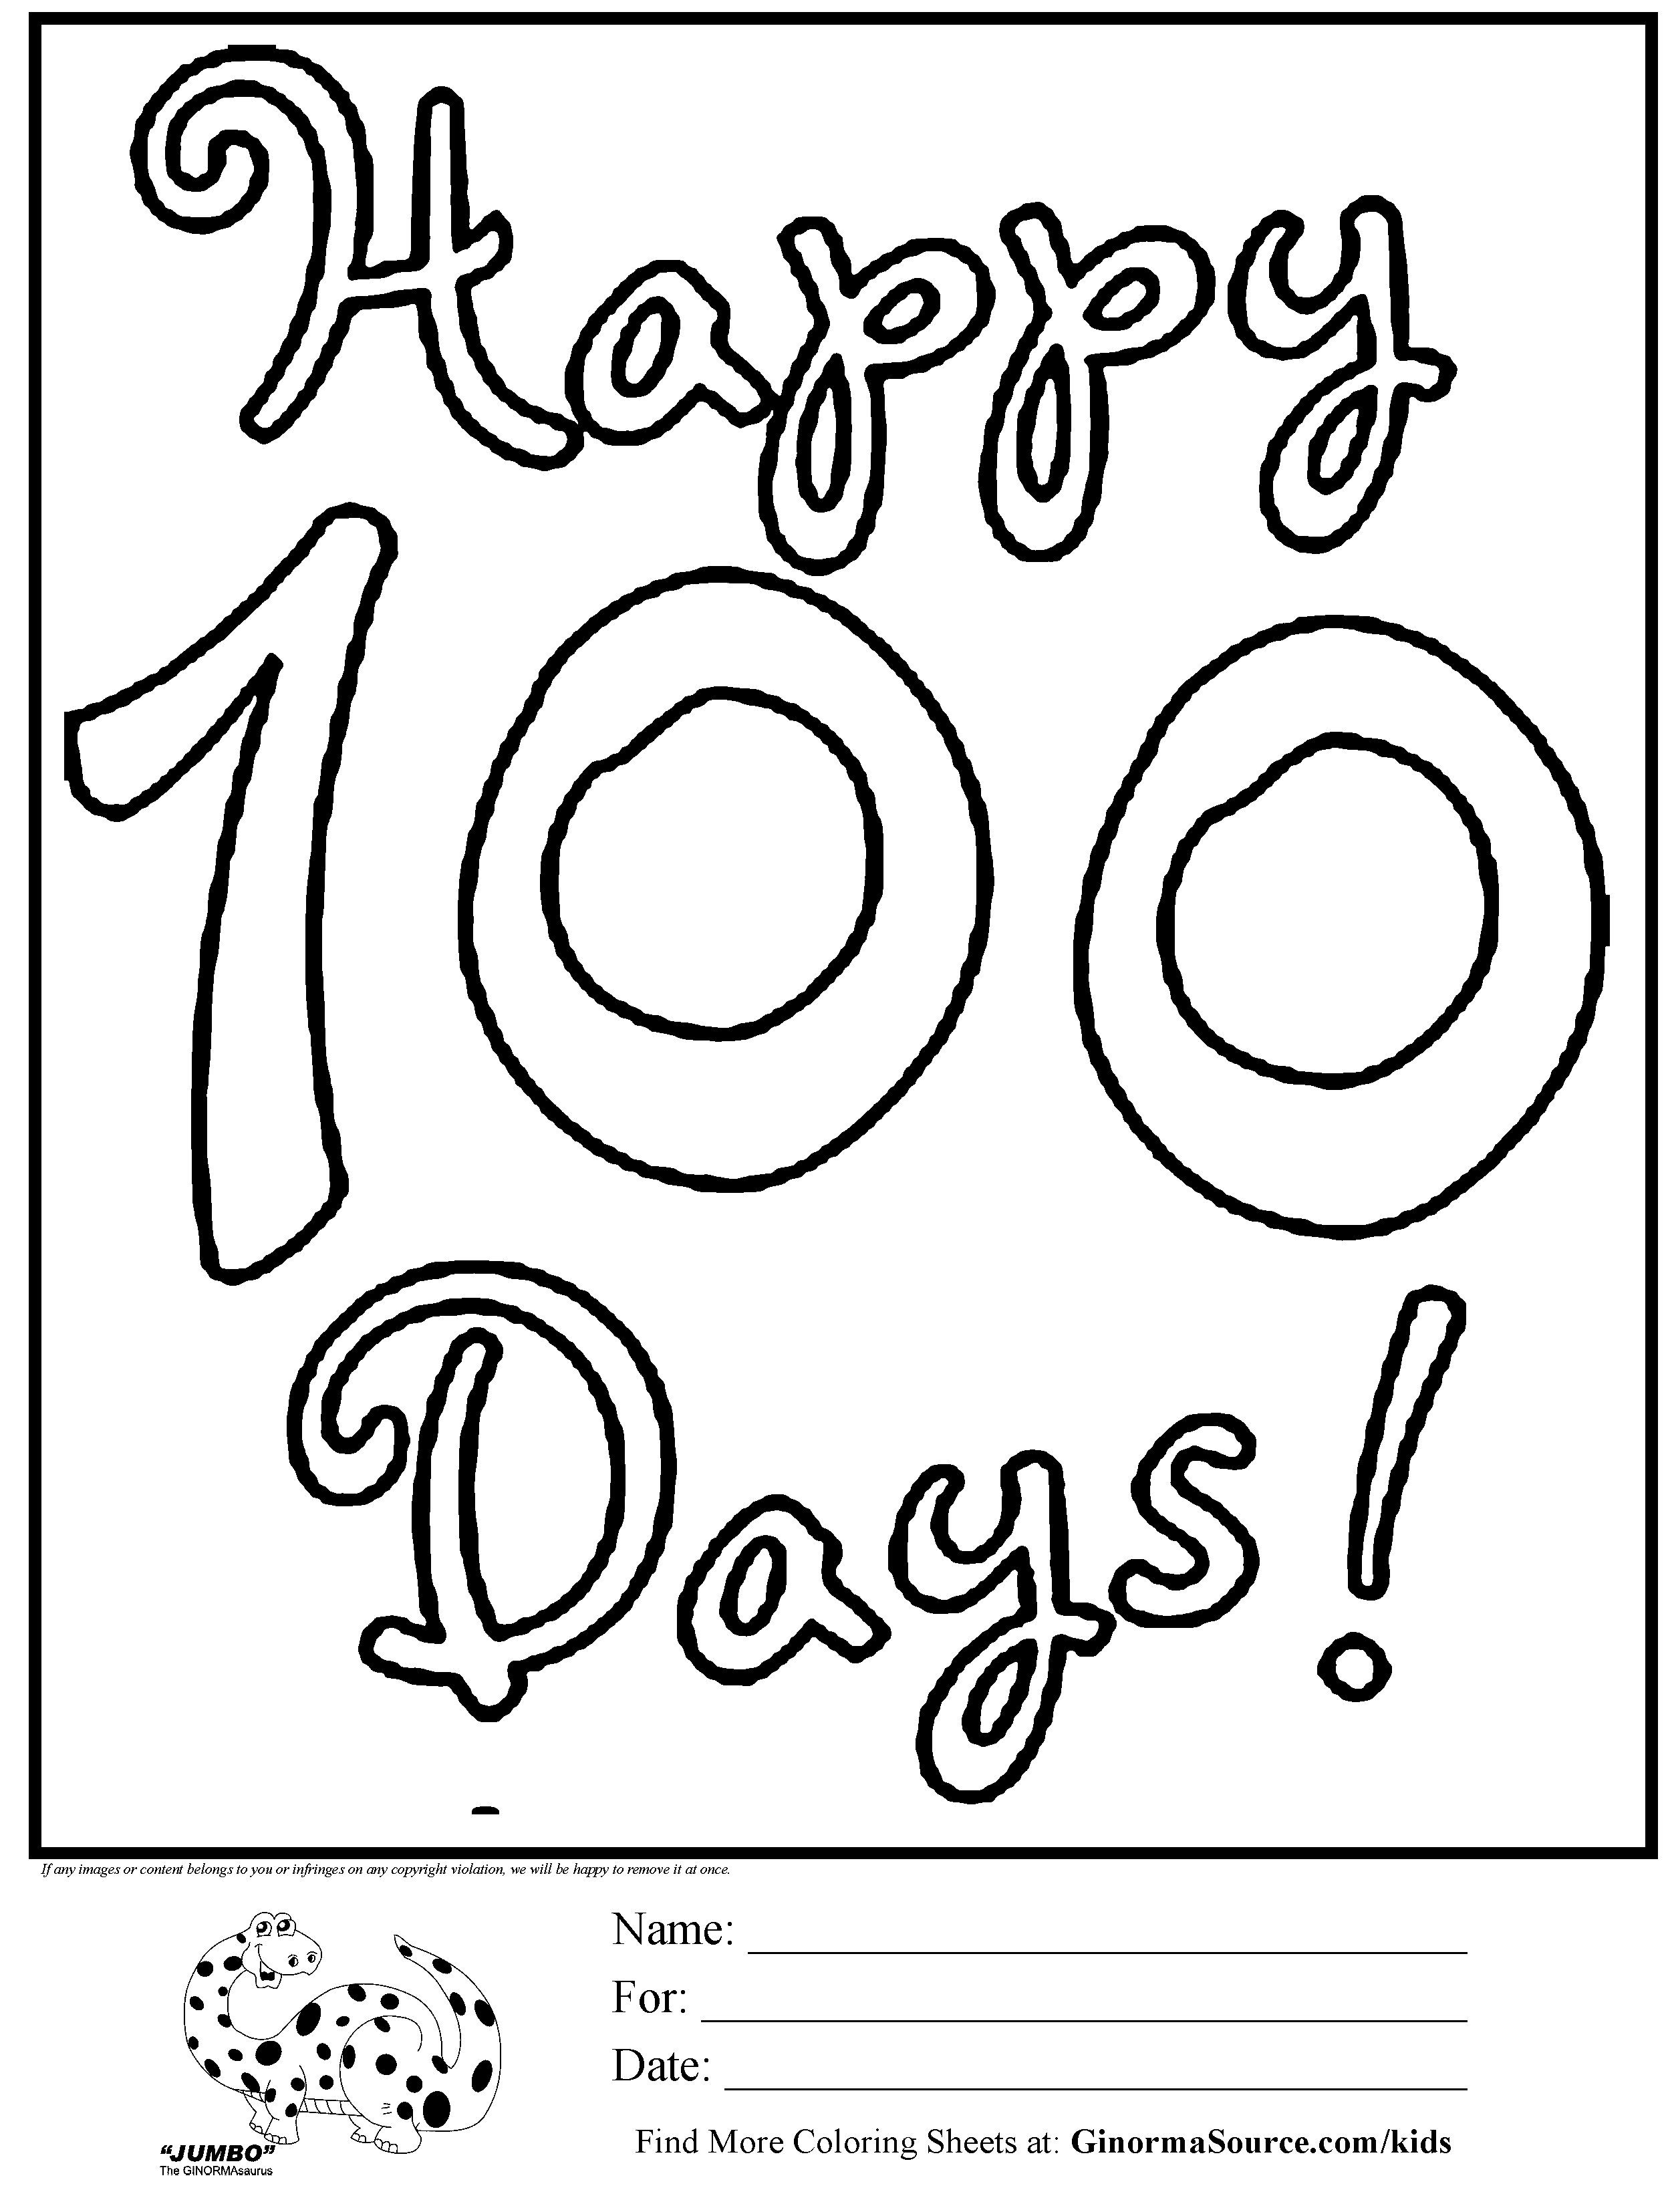 100th-day-crown-printable-printable-world-holiday